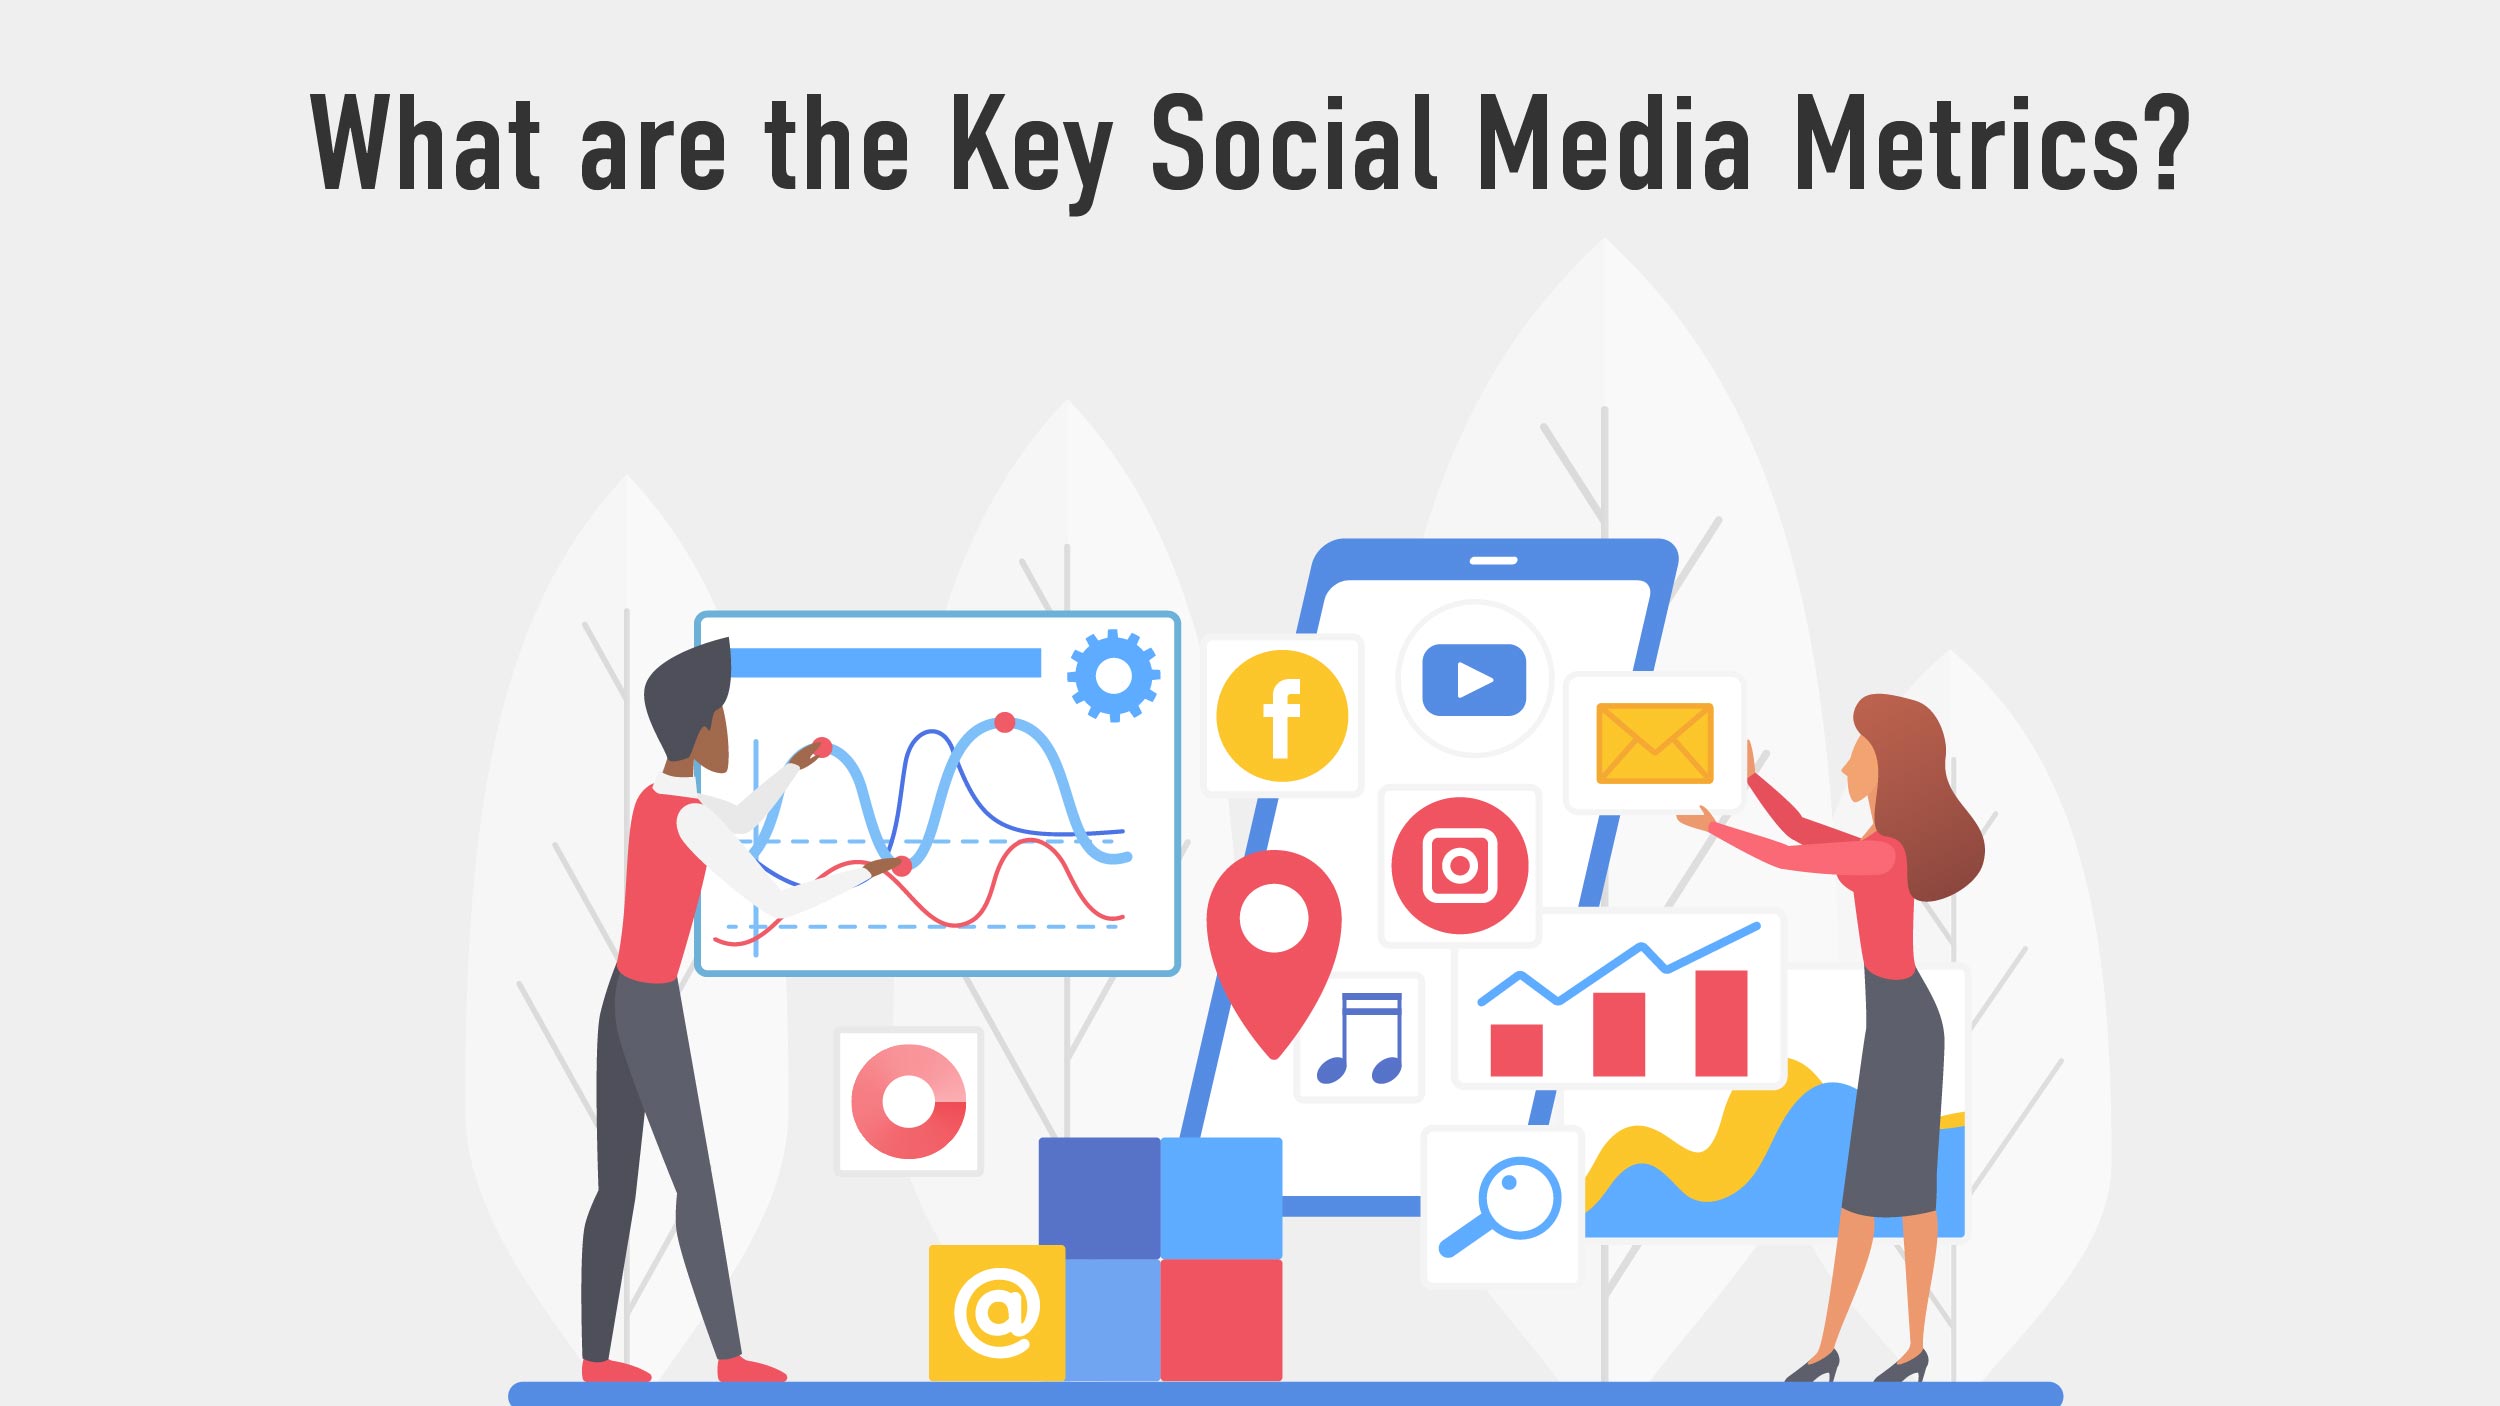 Social media analytics tools